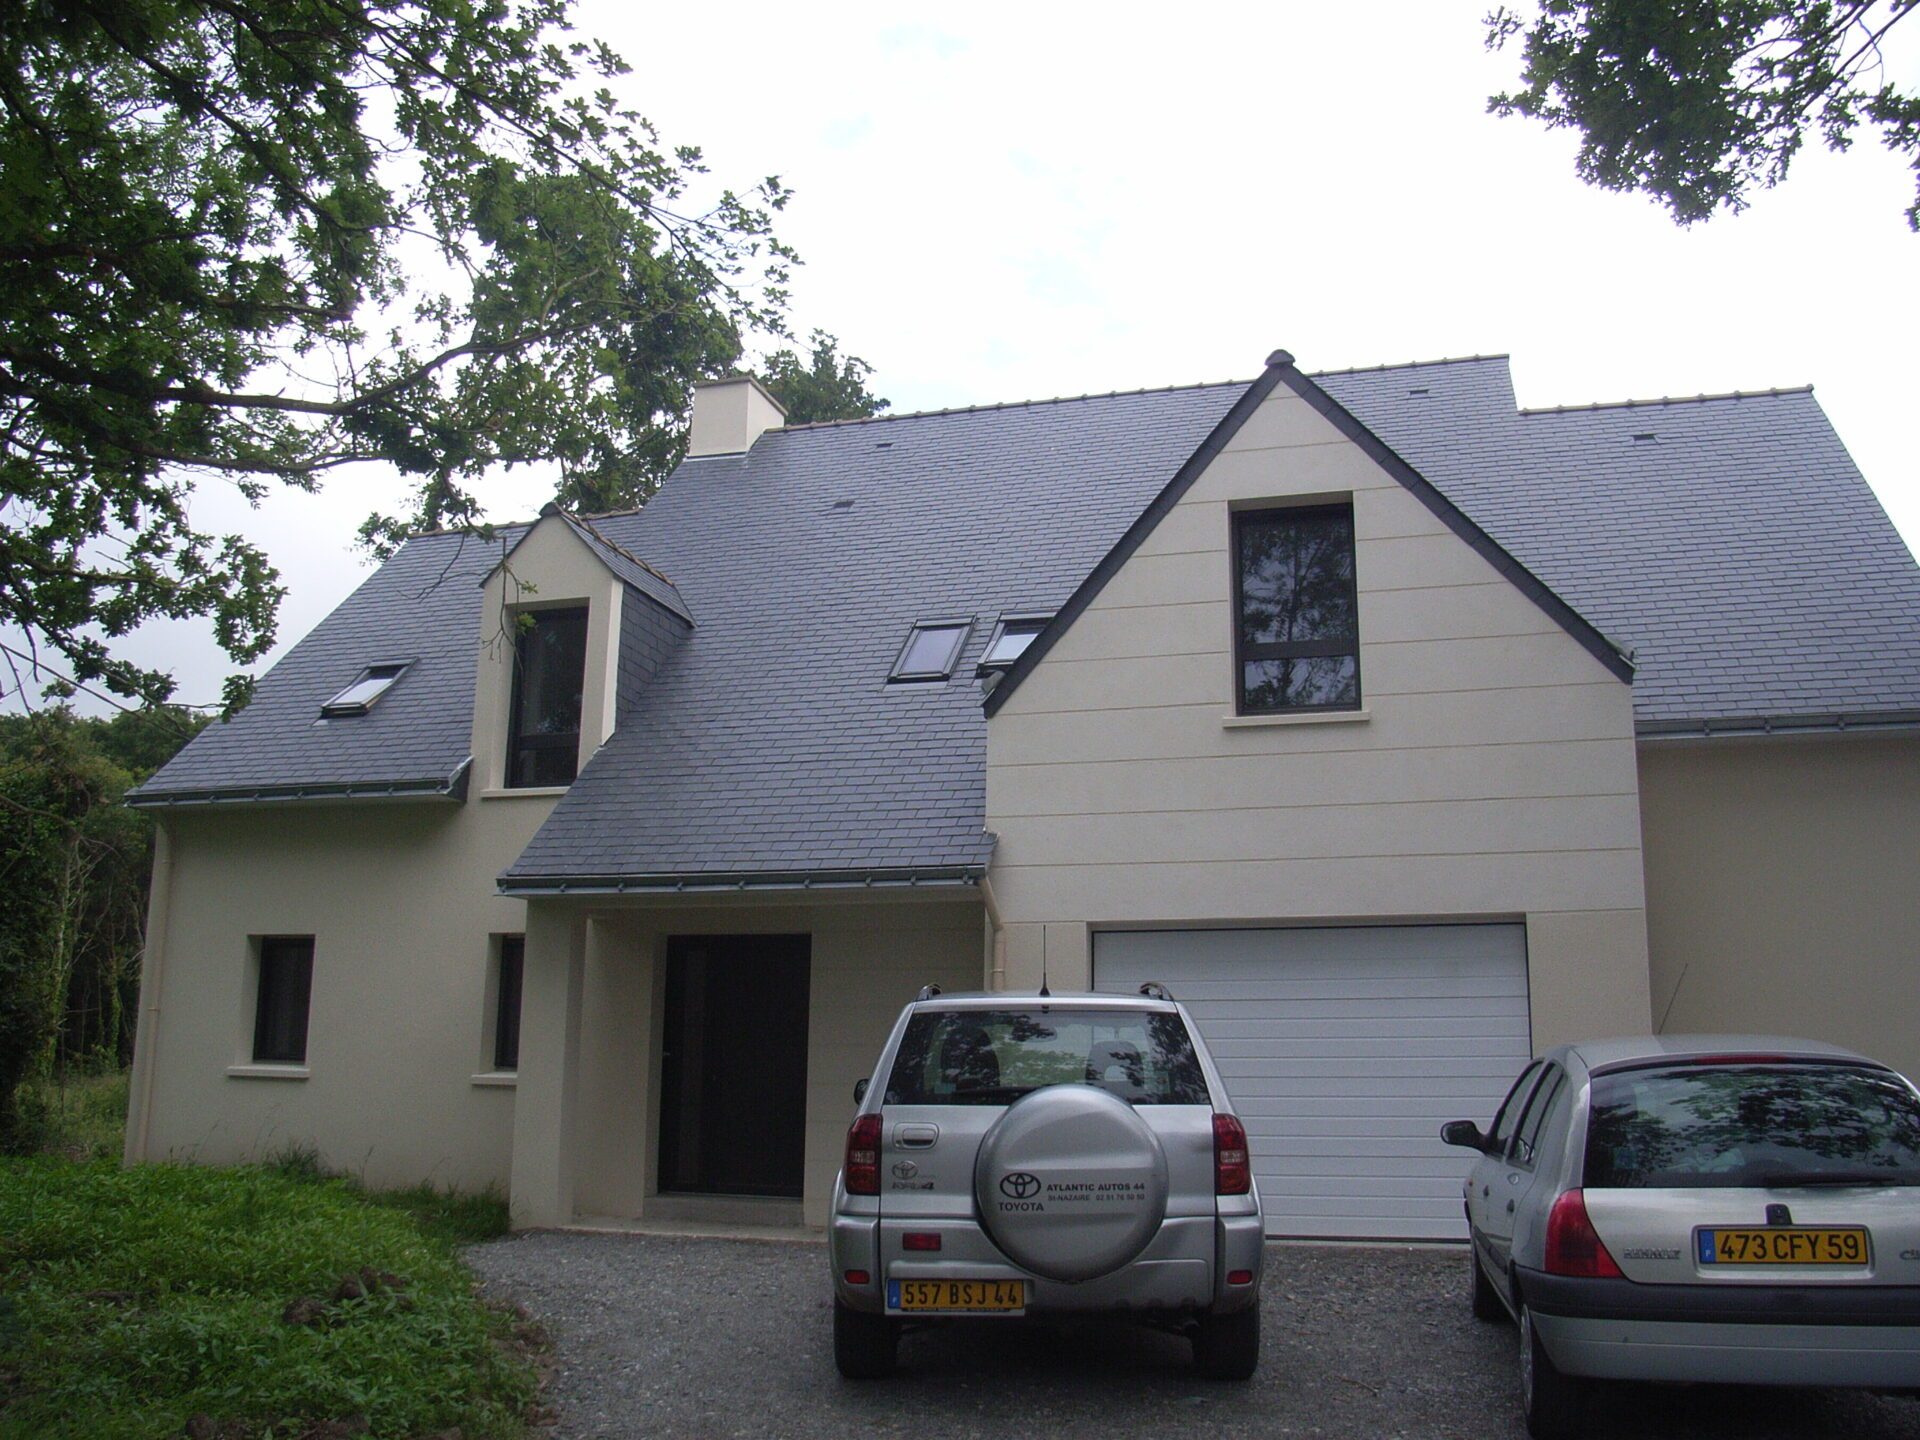 Maison avec bardage aluminium et grandes baies vitrées ainsi qu'une toiture en ardoise